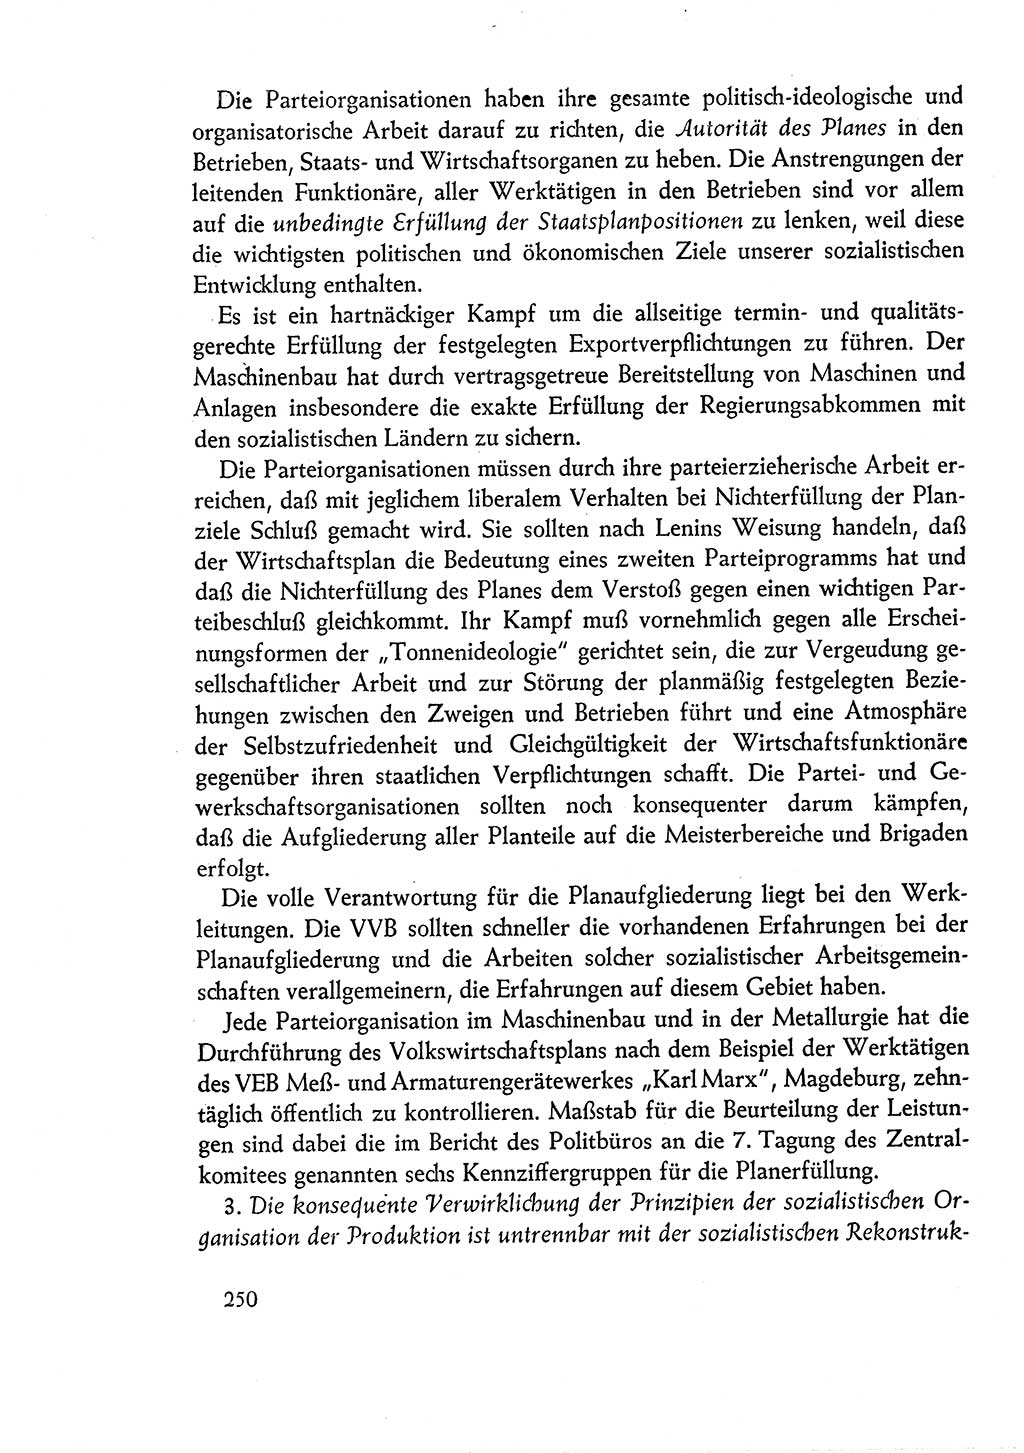 Dokumente der Sozialistischen Einheitspartei Deutschlands (SED) [Deutsche Demokratische Republik (DDR)] 1960-1961, Seite 250 (Dok. SED DDR 1960-1961, S. 250)